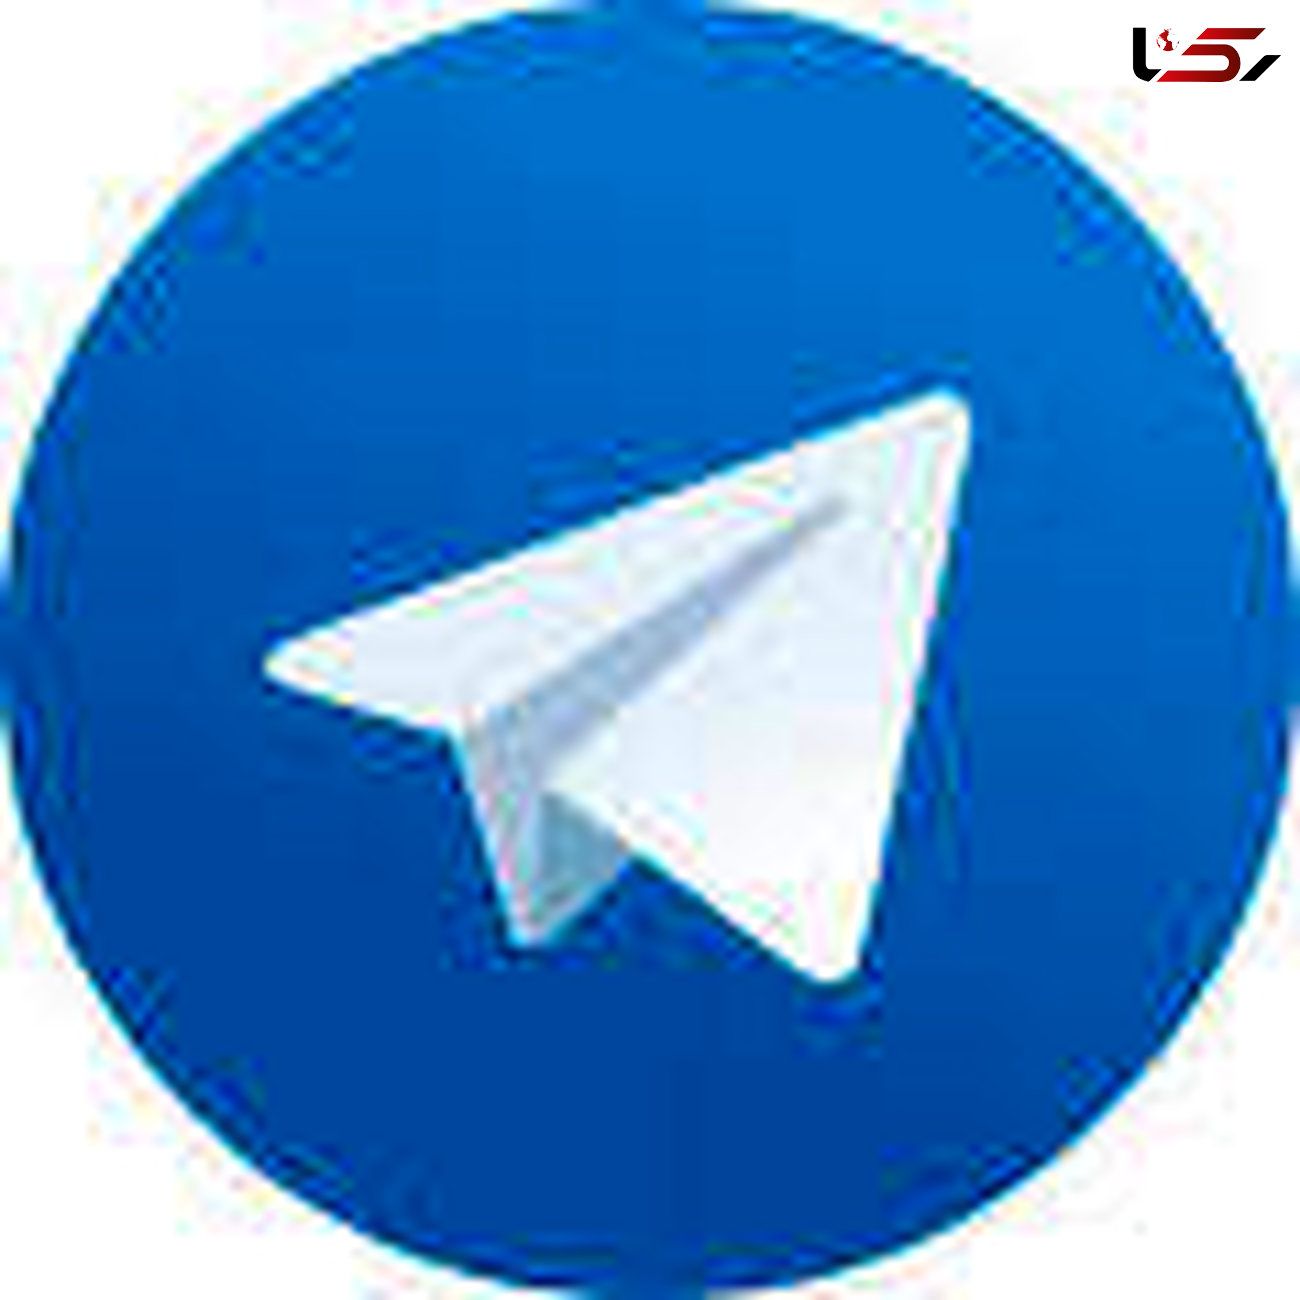 روسها تلگرام راهم هک کردند /شوک اقتصادی به بازار اینترنت